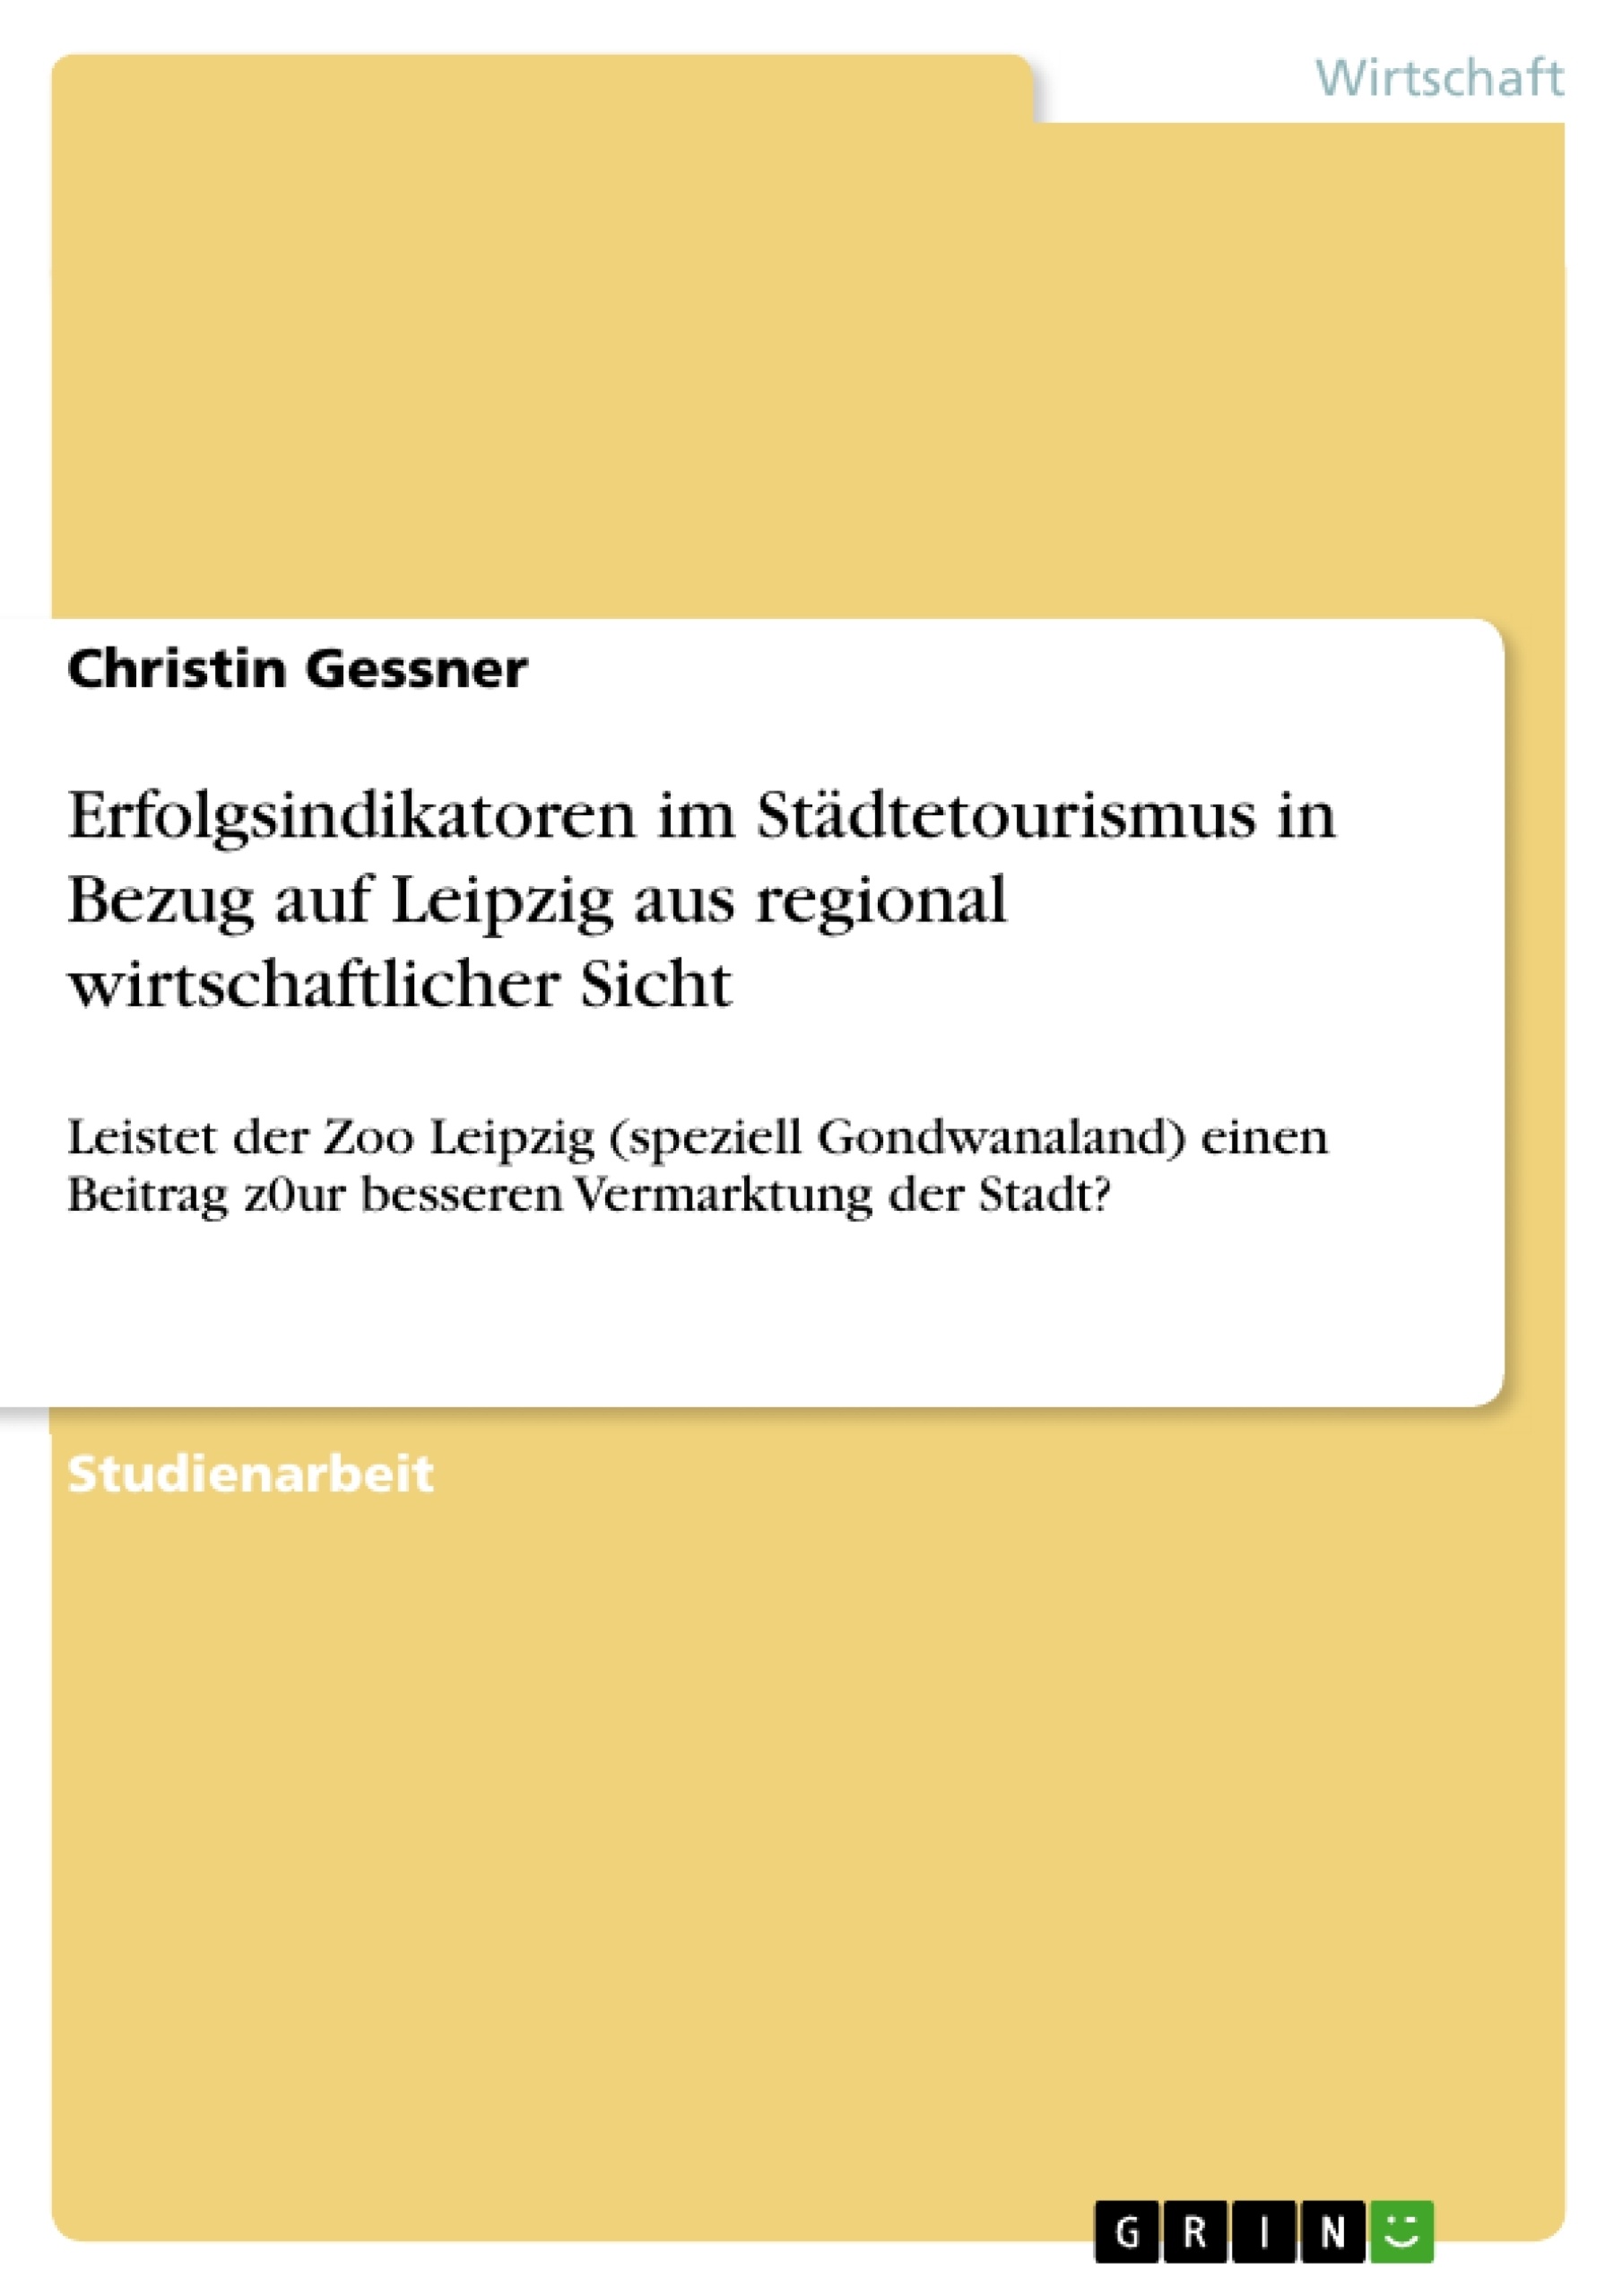 Titre: Erfolgsindikatoren im Städtetourismus in Bezug auf Leipzig aus regional wirtschaftlicher Sicht